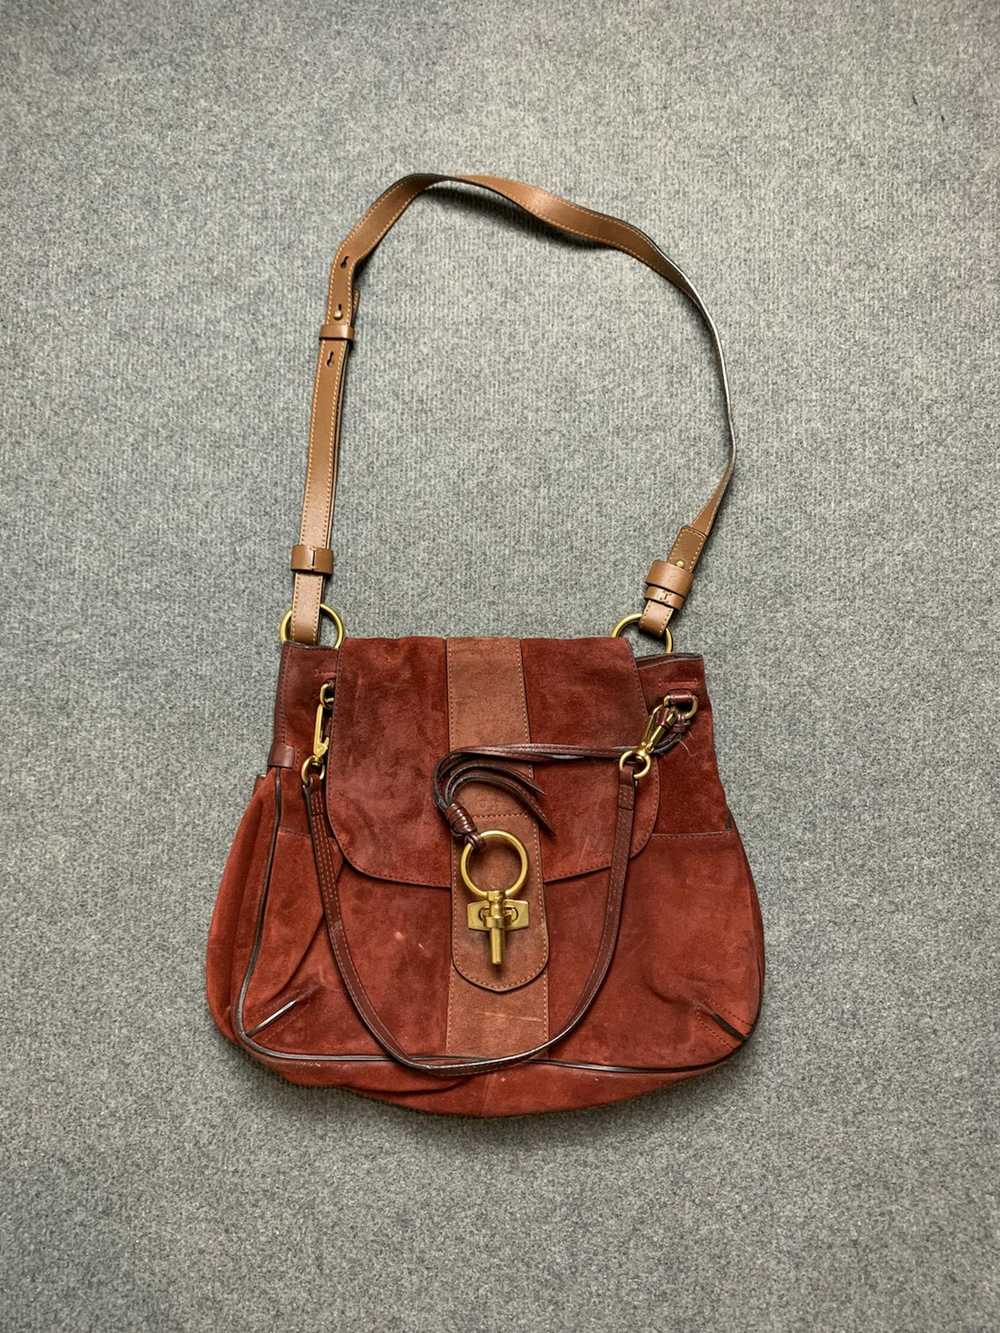 Chloe × Designer × Vintage Chloe leather suede bag - image 1